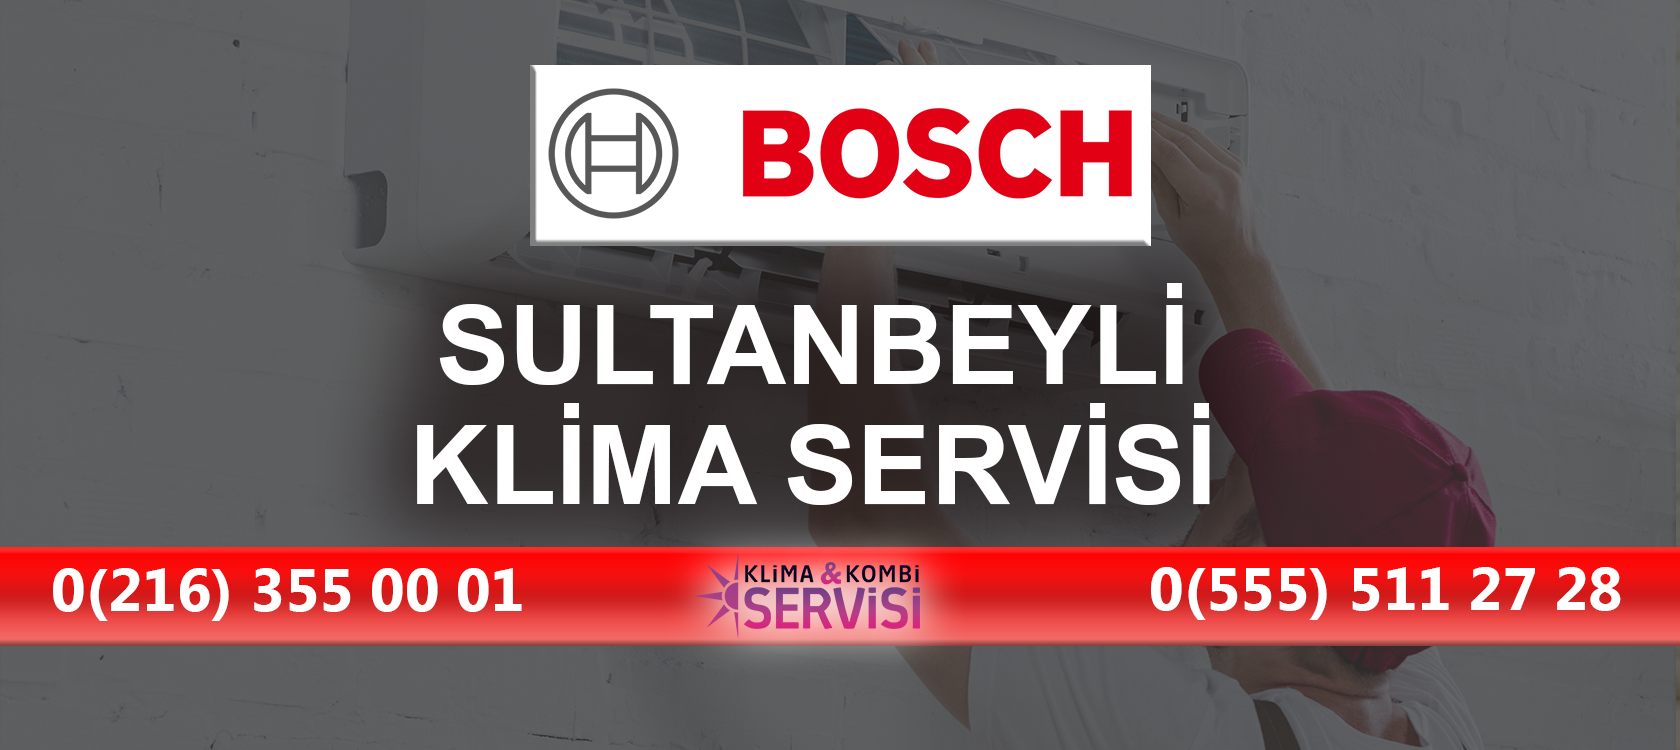 Sultanbeyli Bosch Klima Servisi